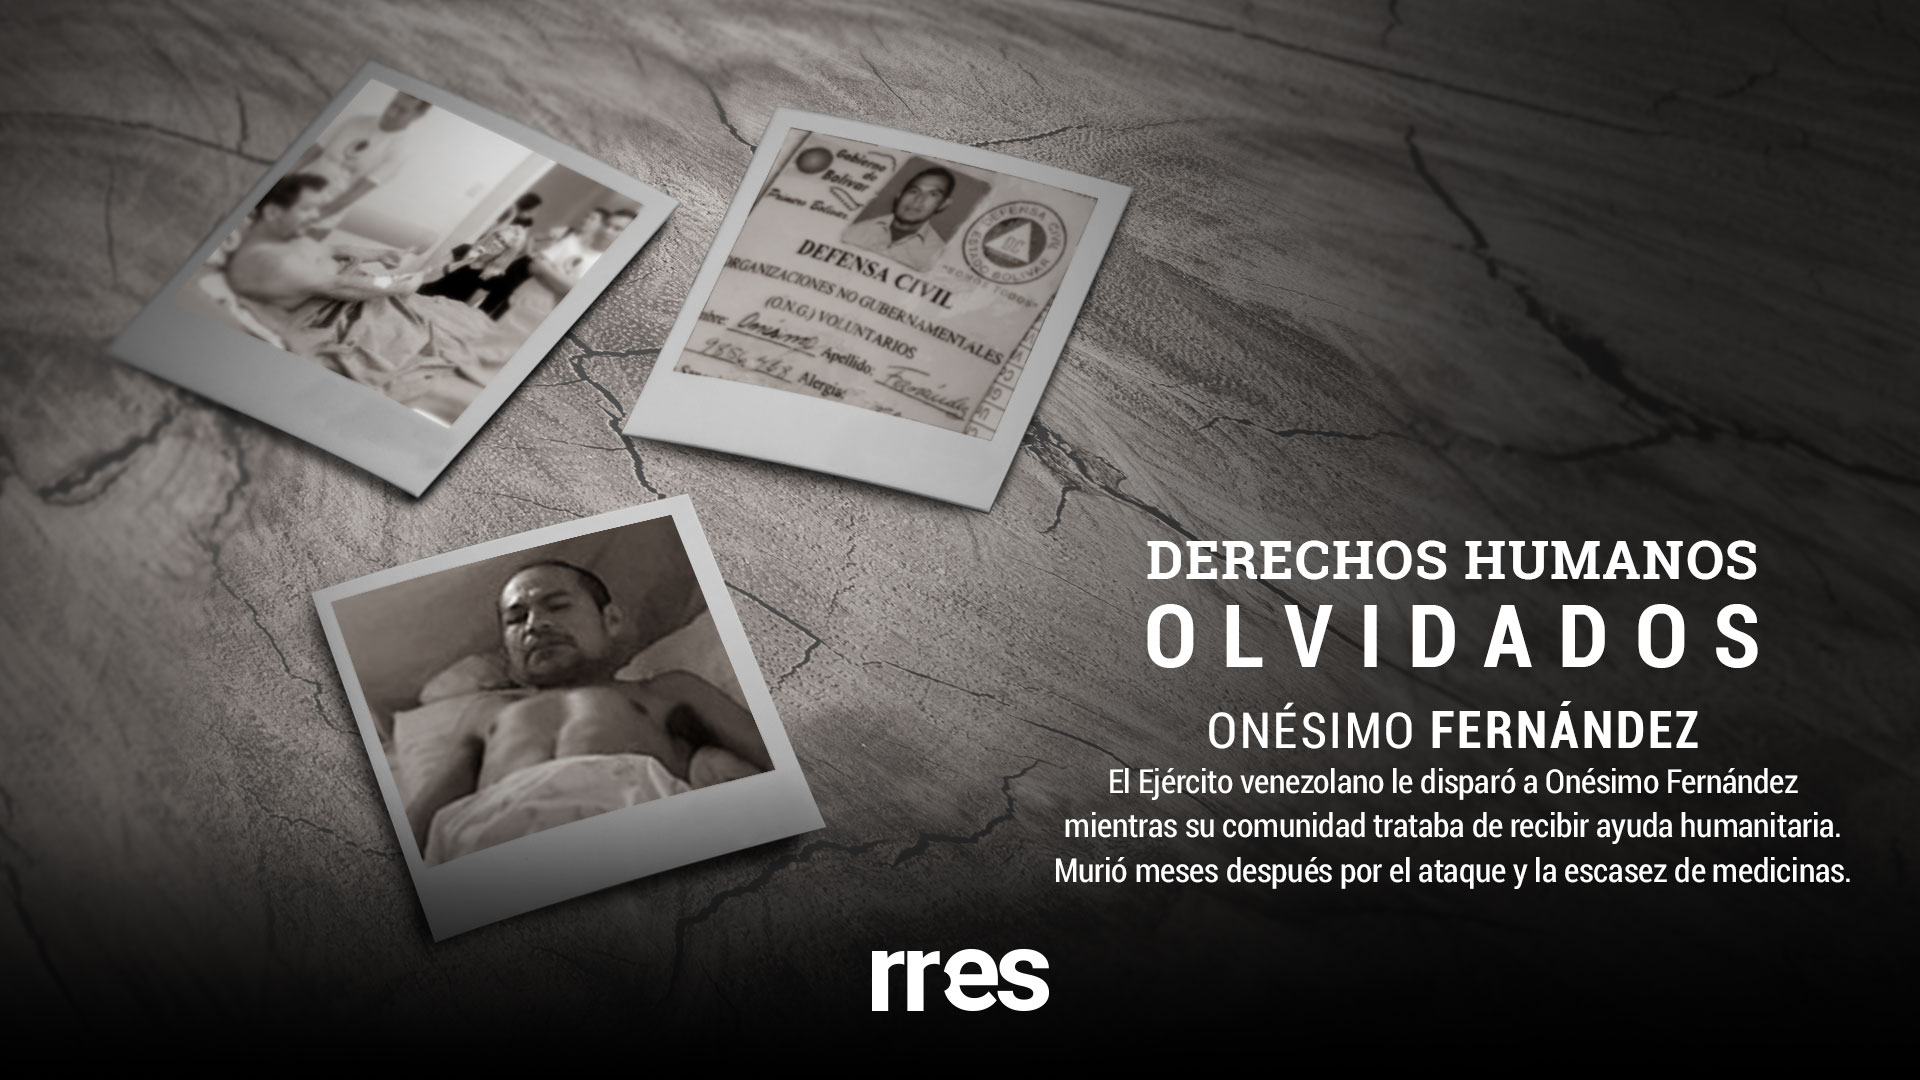 DDHH Olvidados | El Estado le dio la espalda a Onésimo Fernández